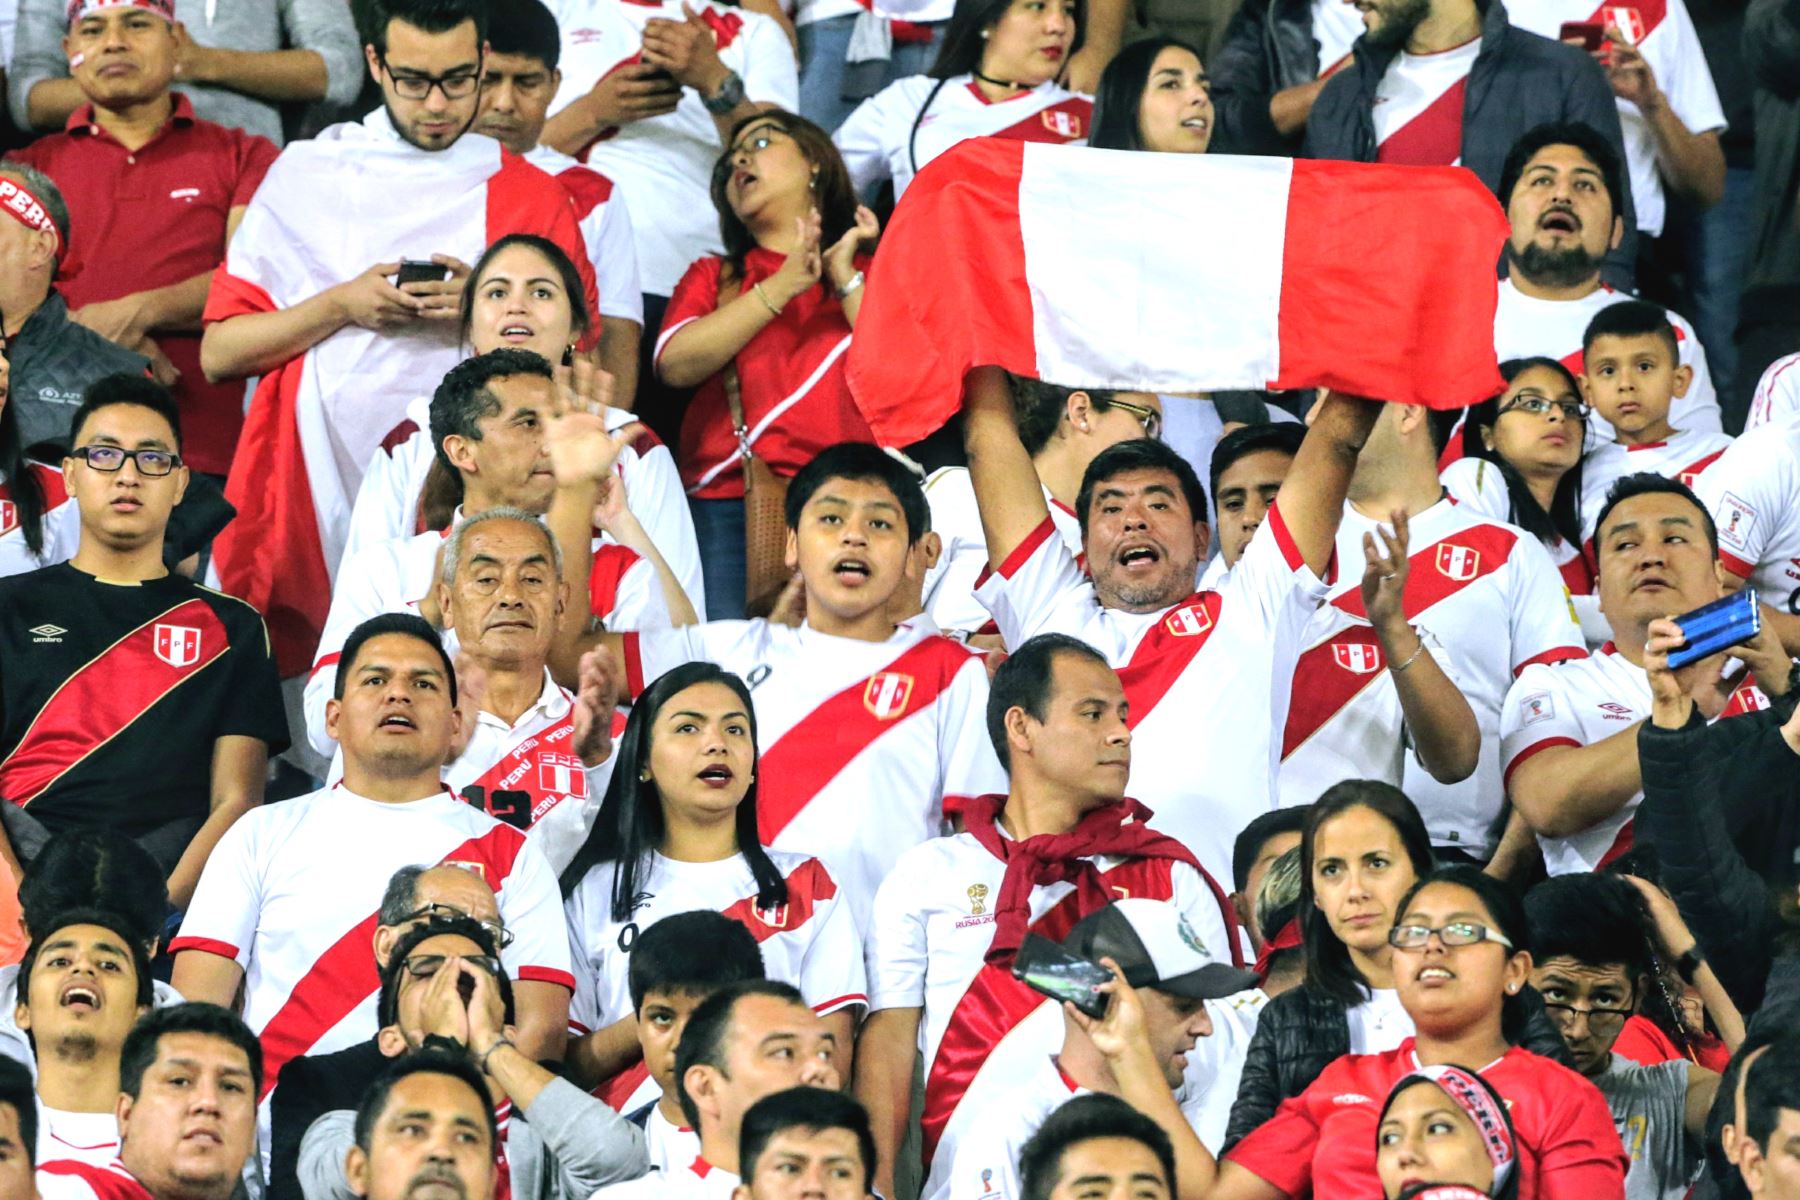 Jefe de Estado: los peruanos estamos con la selección en una sola fuerza